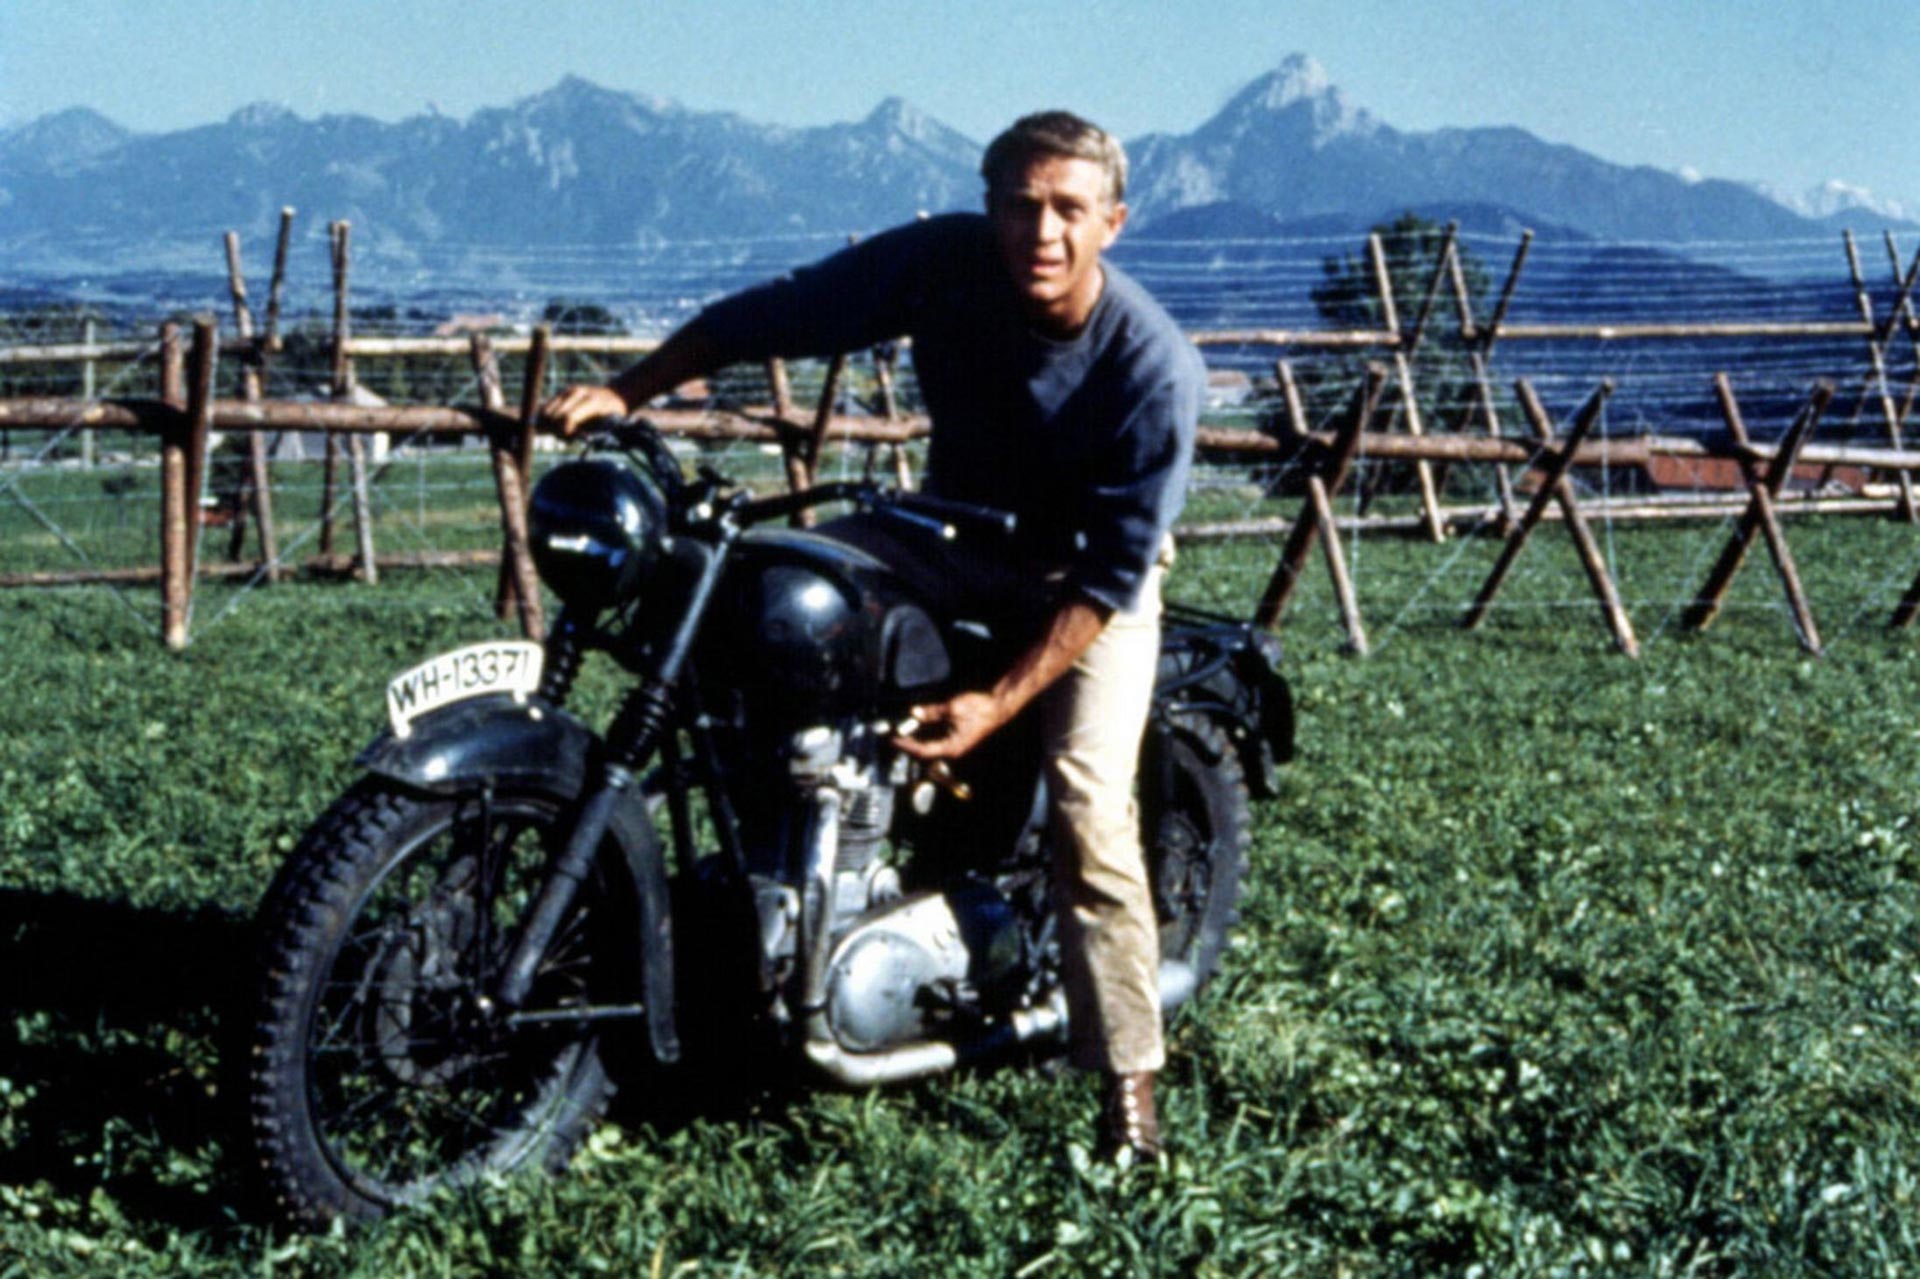 استیو مک کوئین در فیلم فرار بزرگ سوار بر موتور سیکلت